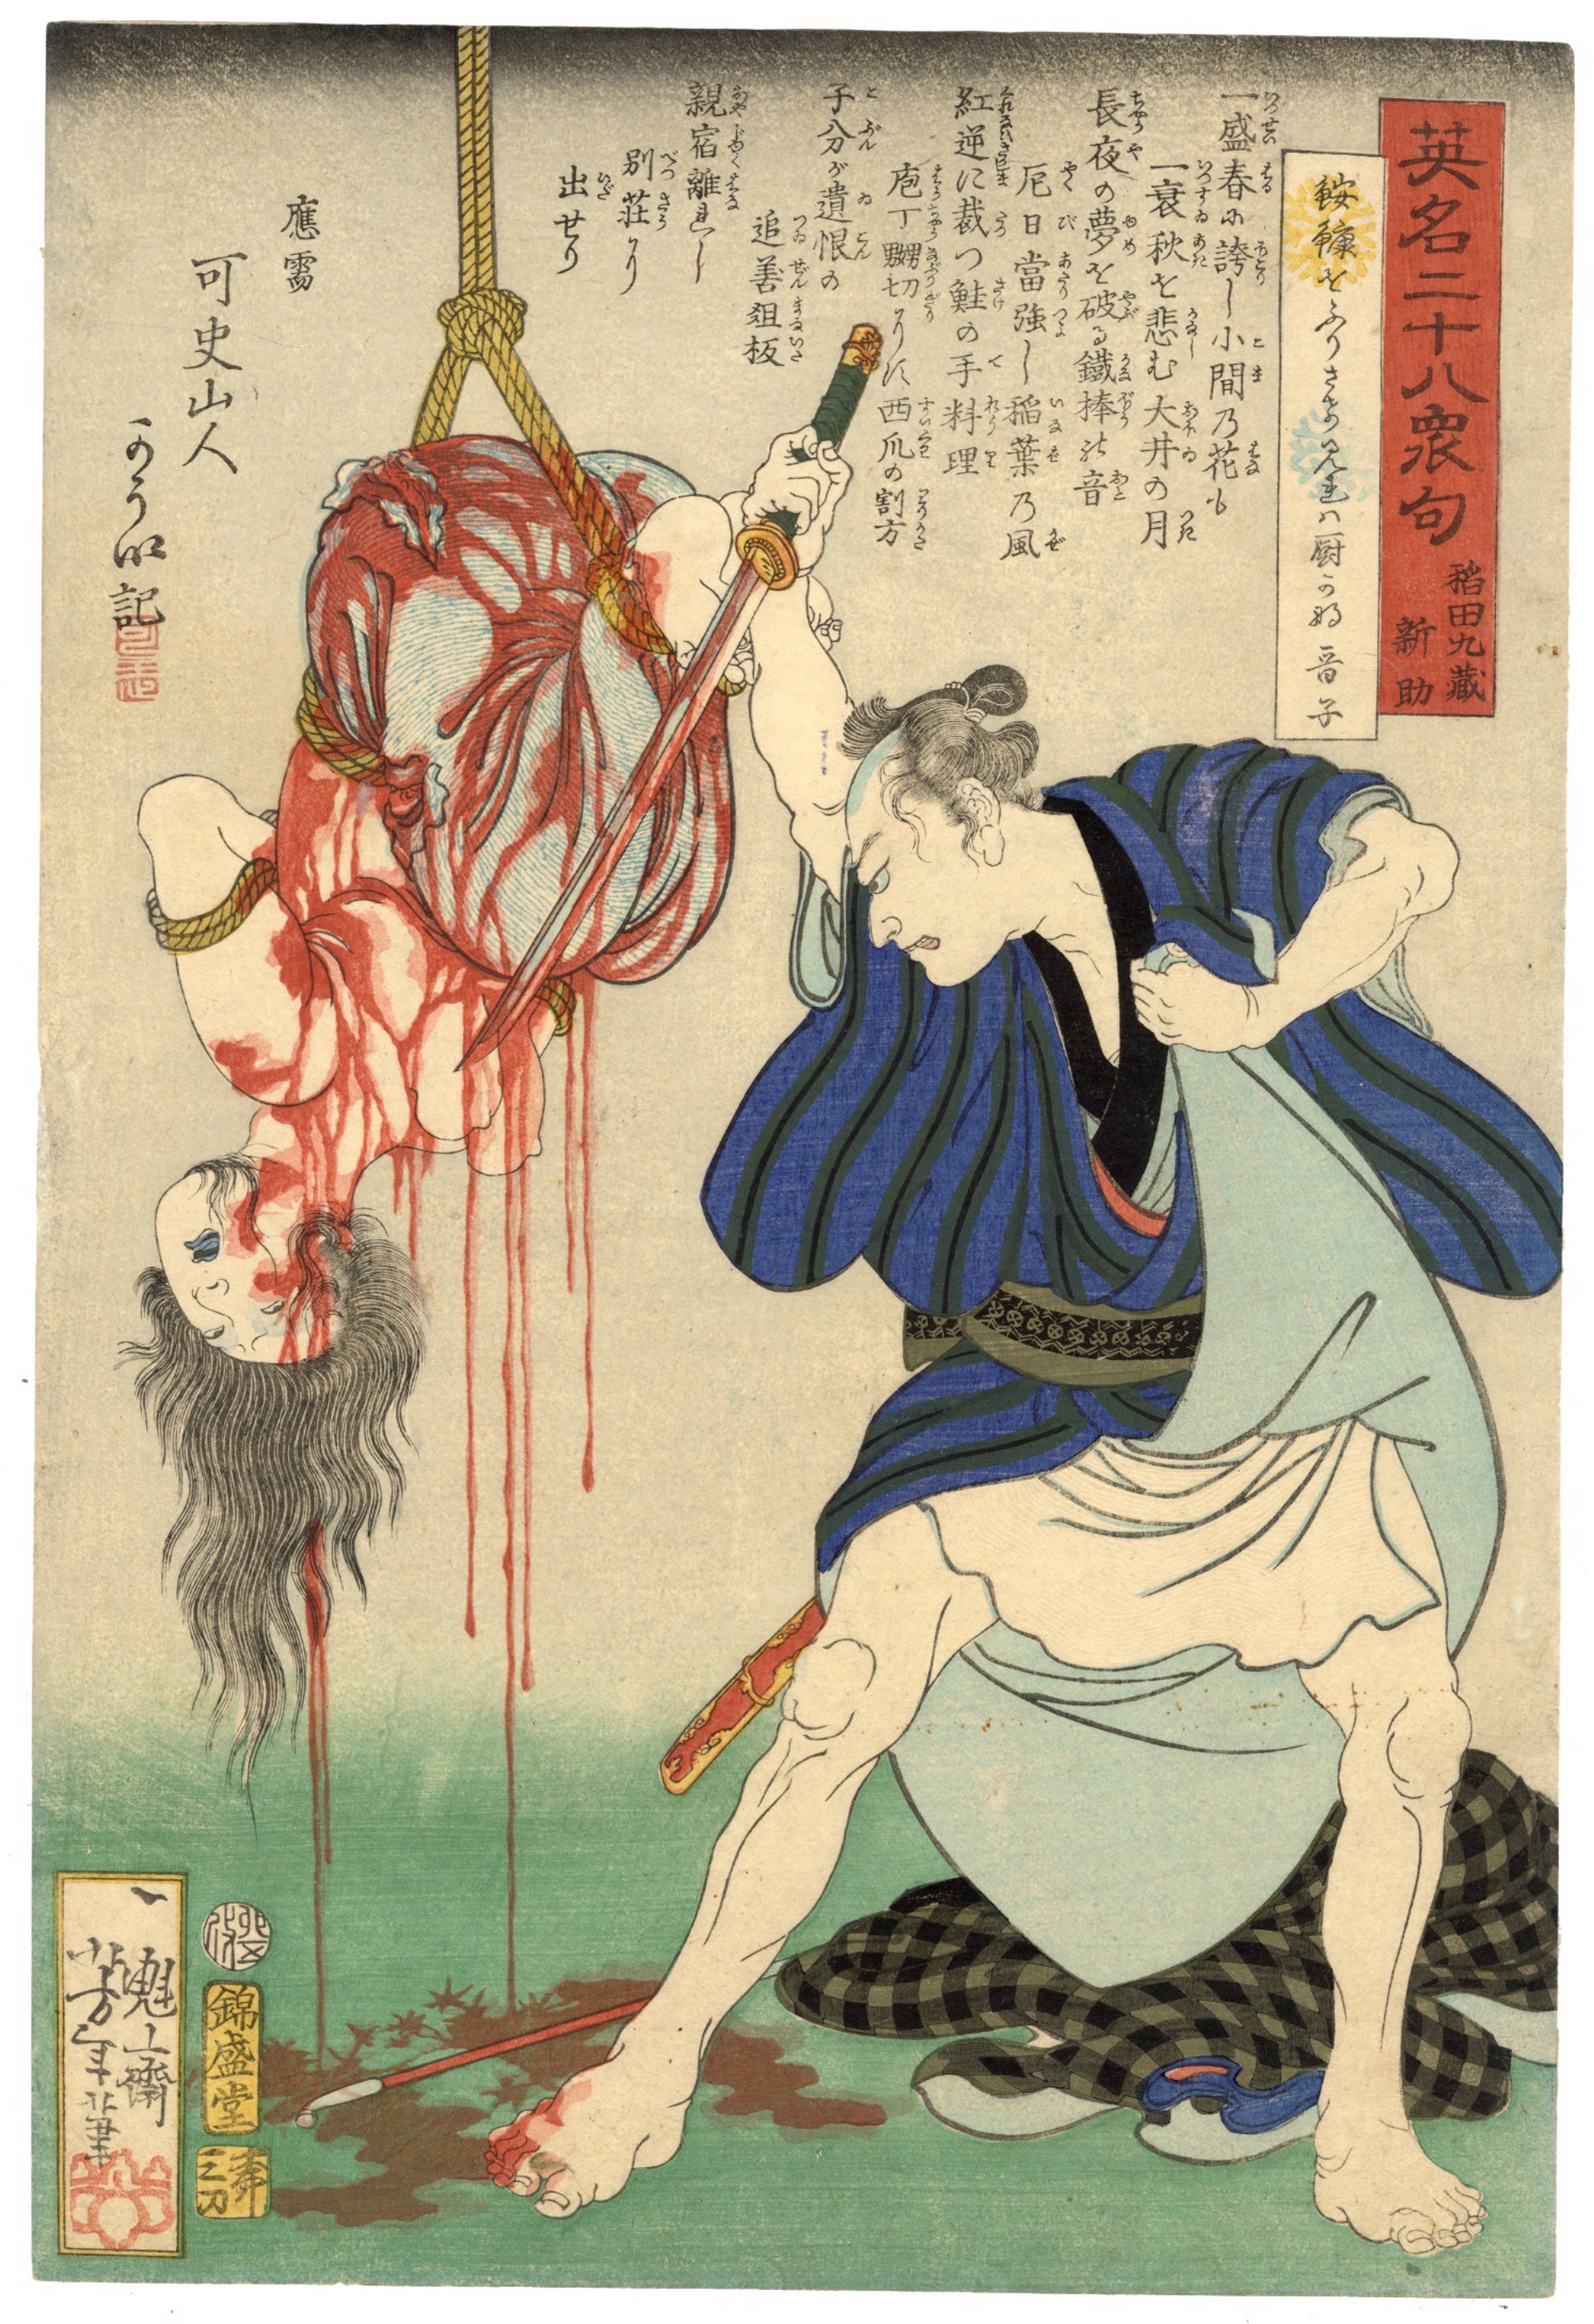 #12 Inada Kyuzo Shinsuke Slaughters the Kitchen Maid by Yoshitoshi